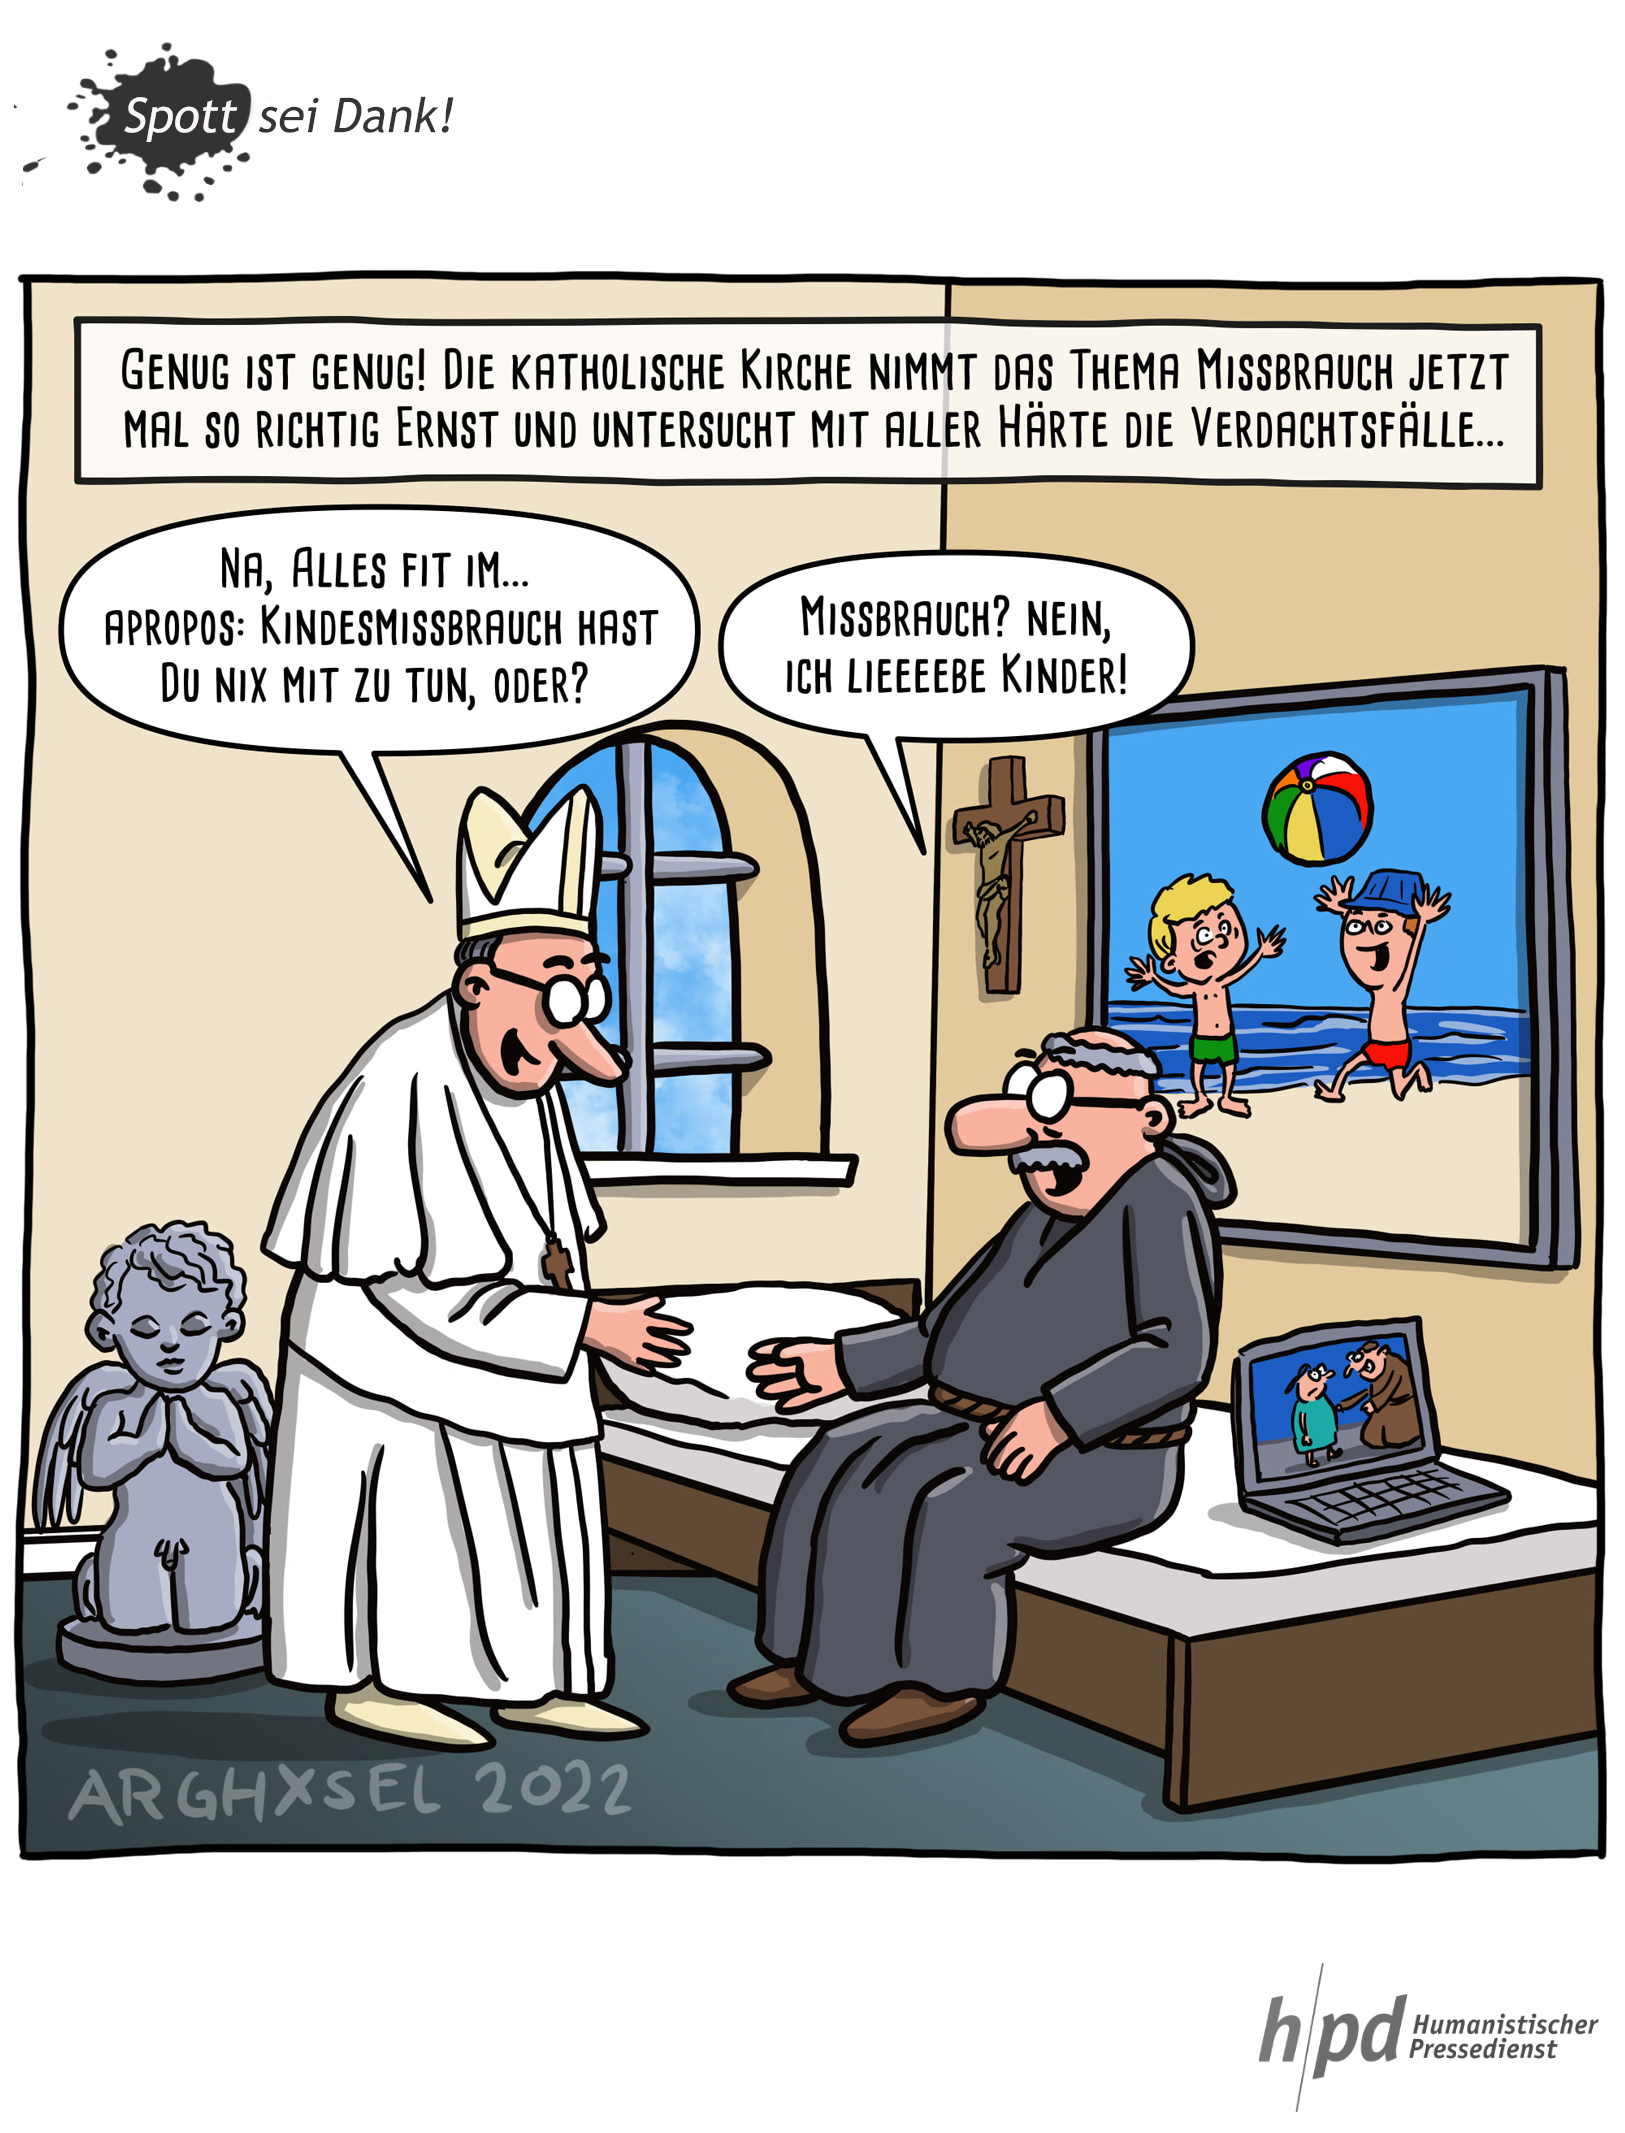 Das erste mal zeichnete für den hpd der Karikaturist arghxel: Missbrauch wird in der kath. Kirche gnadenlos aufgeklärt.